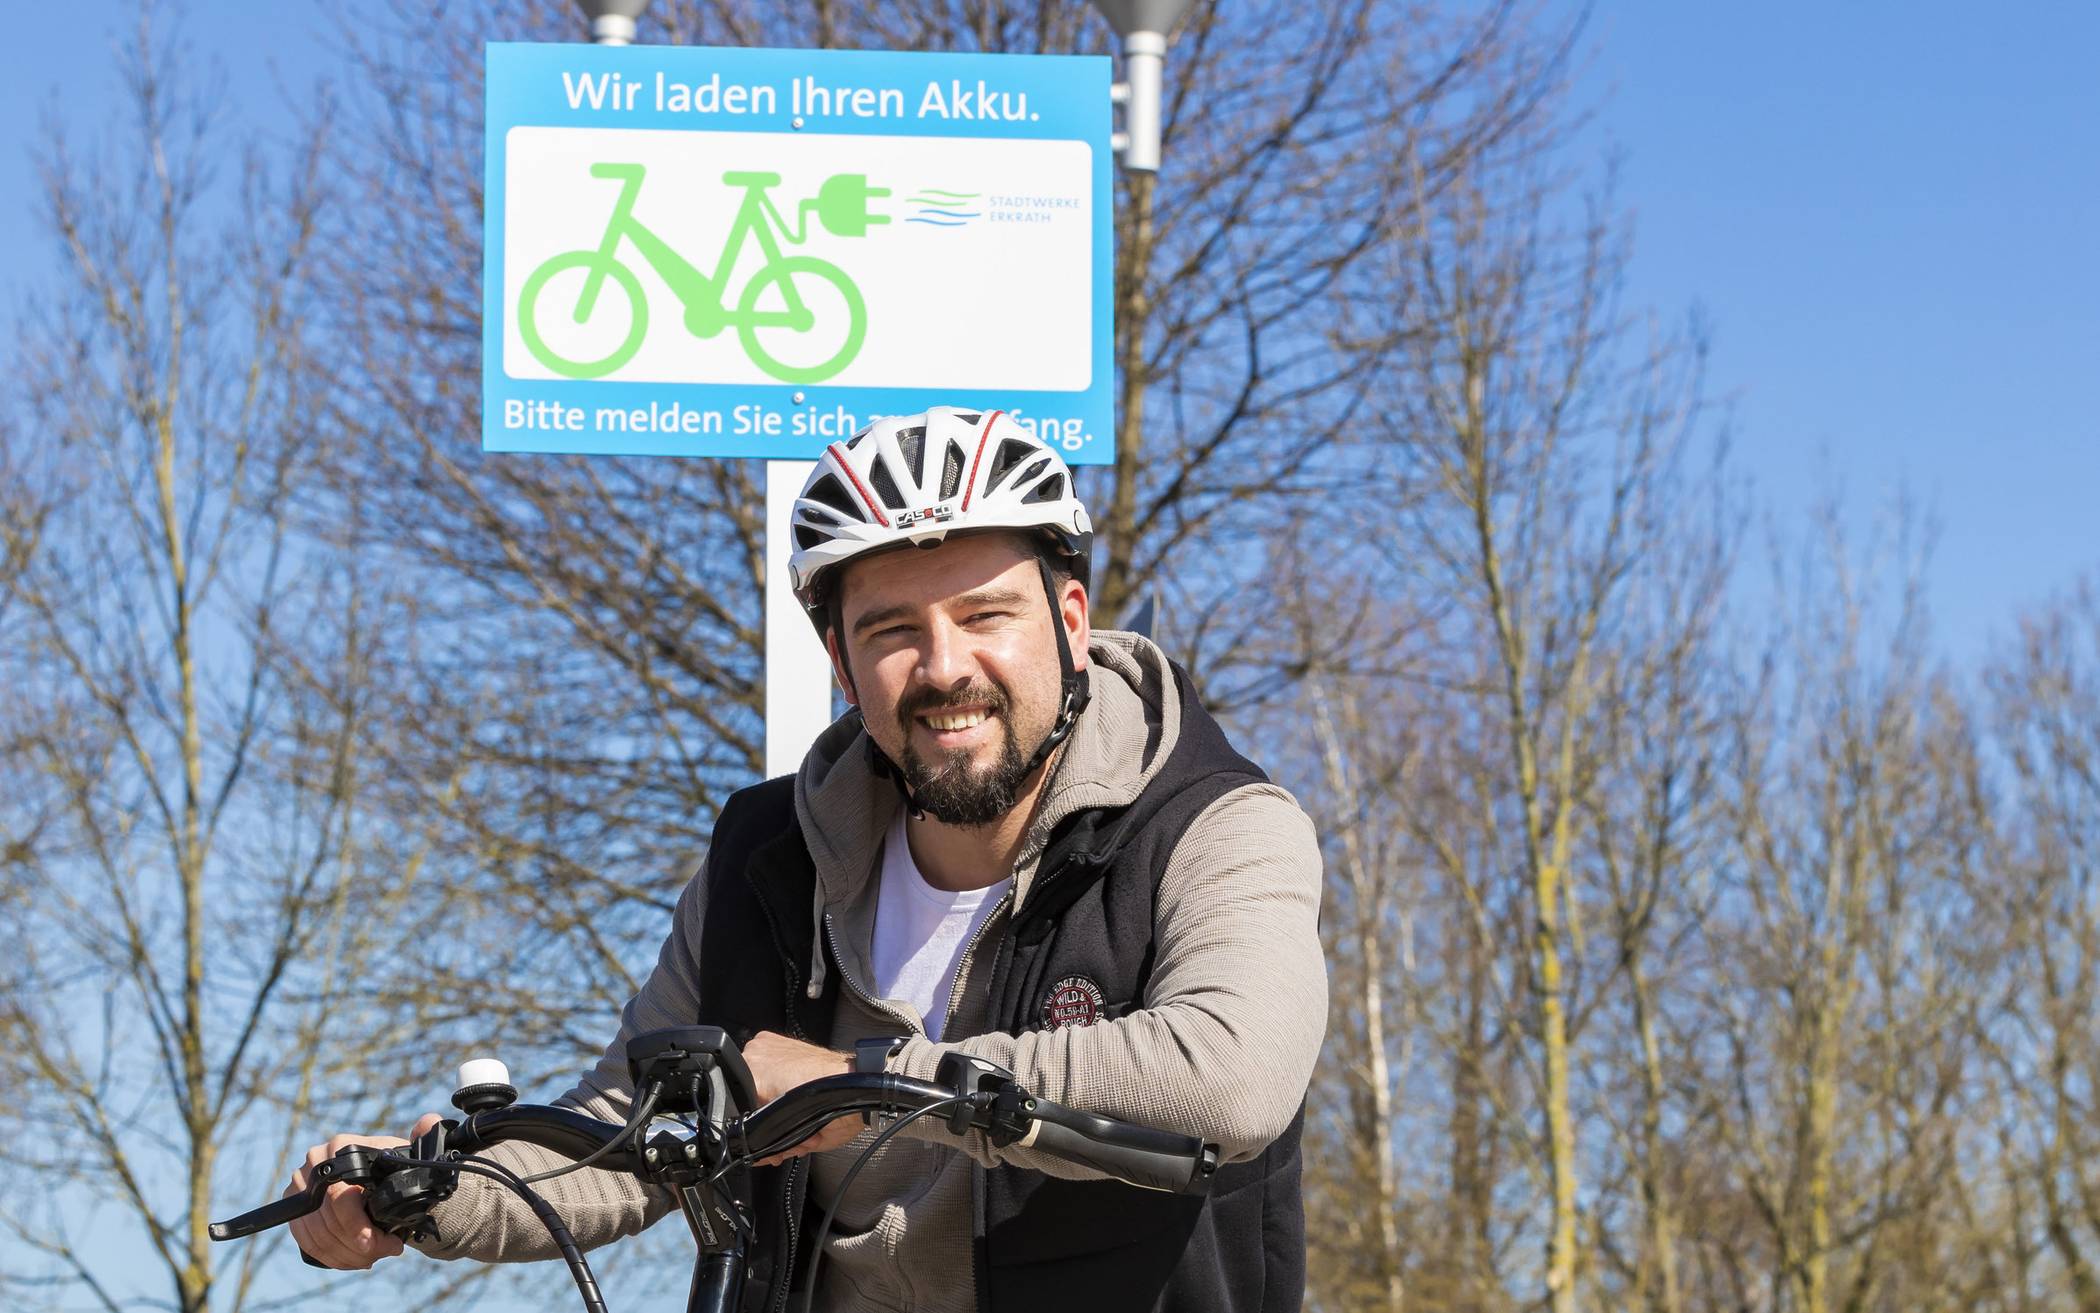  Michael Heuskel aus dem Kundenservice der Stadtwerke Erkrath ist überzeugter E-Bike-Fahrer und freut sich über das neue Ladeangebot. 